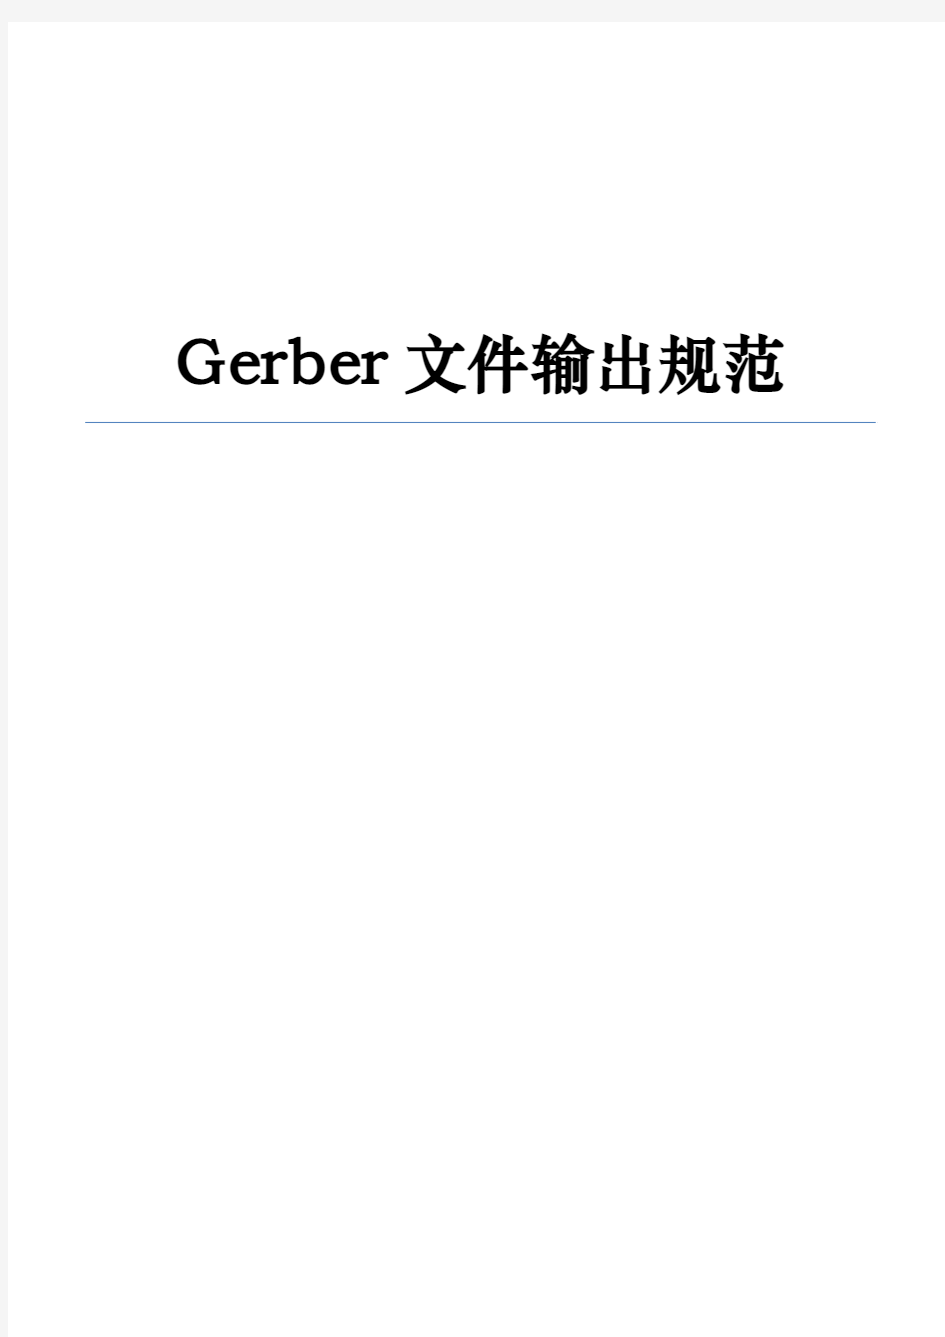 Gerber文件输出规范